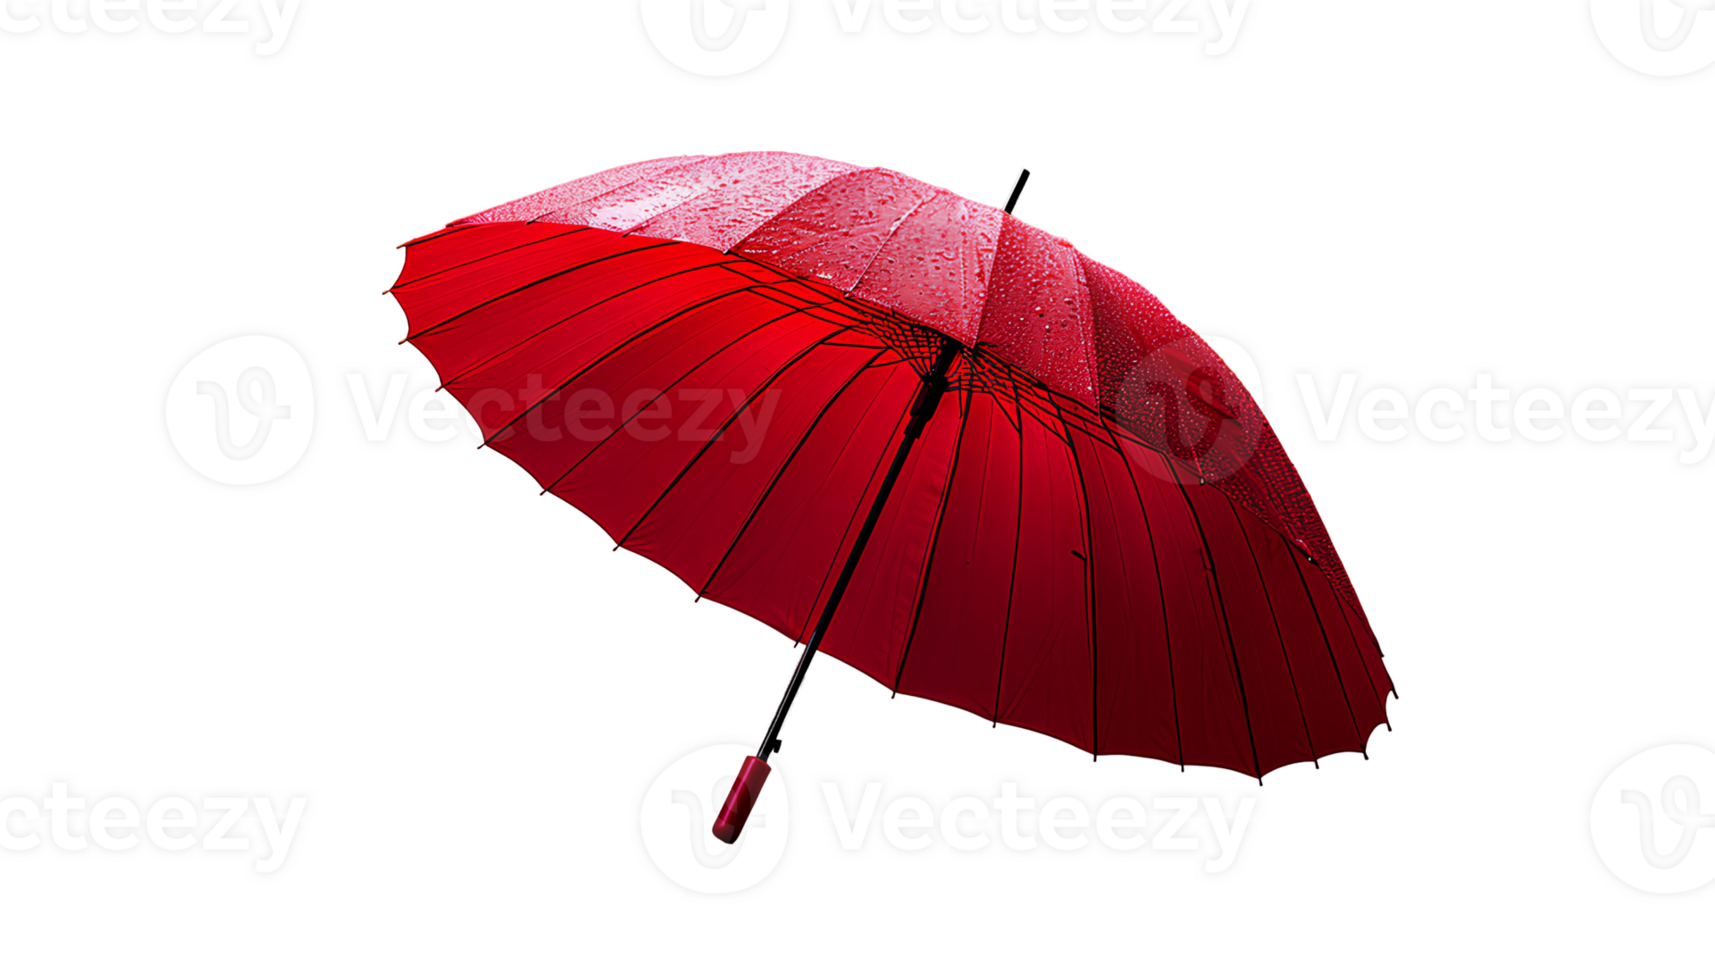 ai généré rouge parapluie png. parapluie isolé. rouge parapluie pour protection contre pluie png